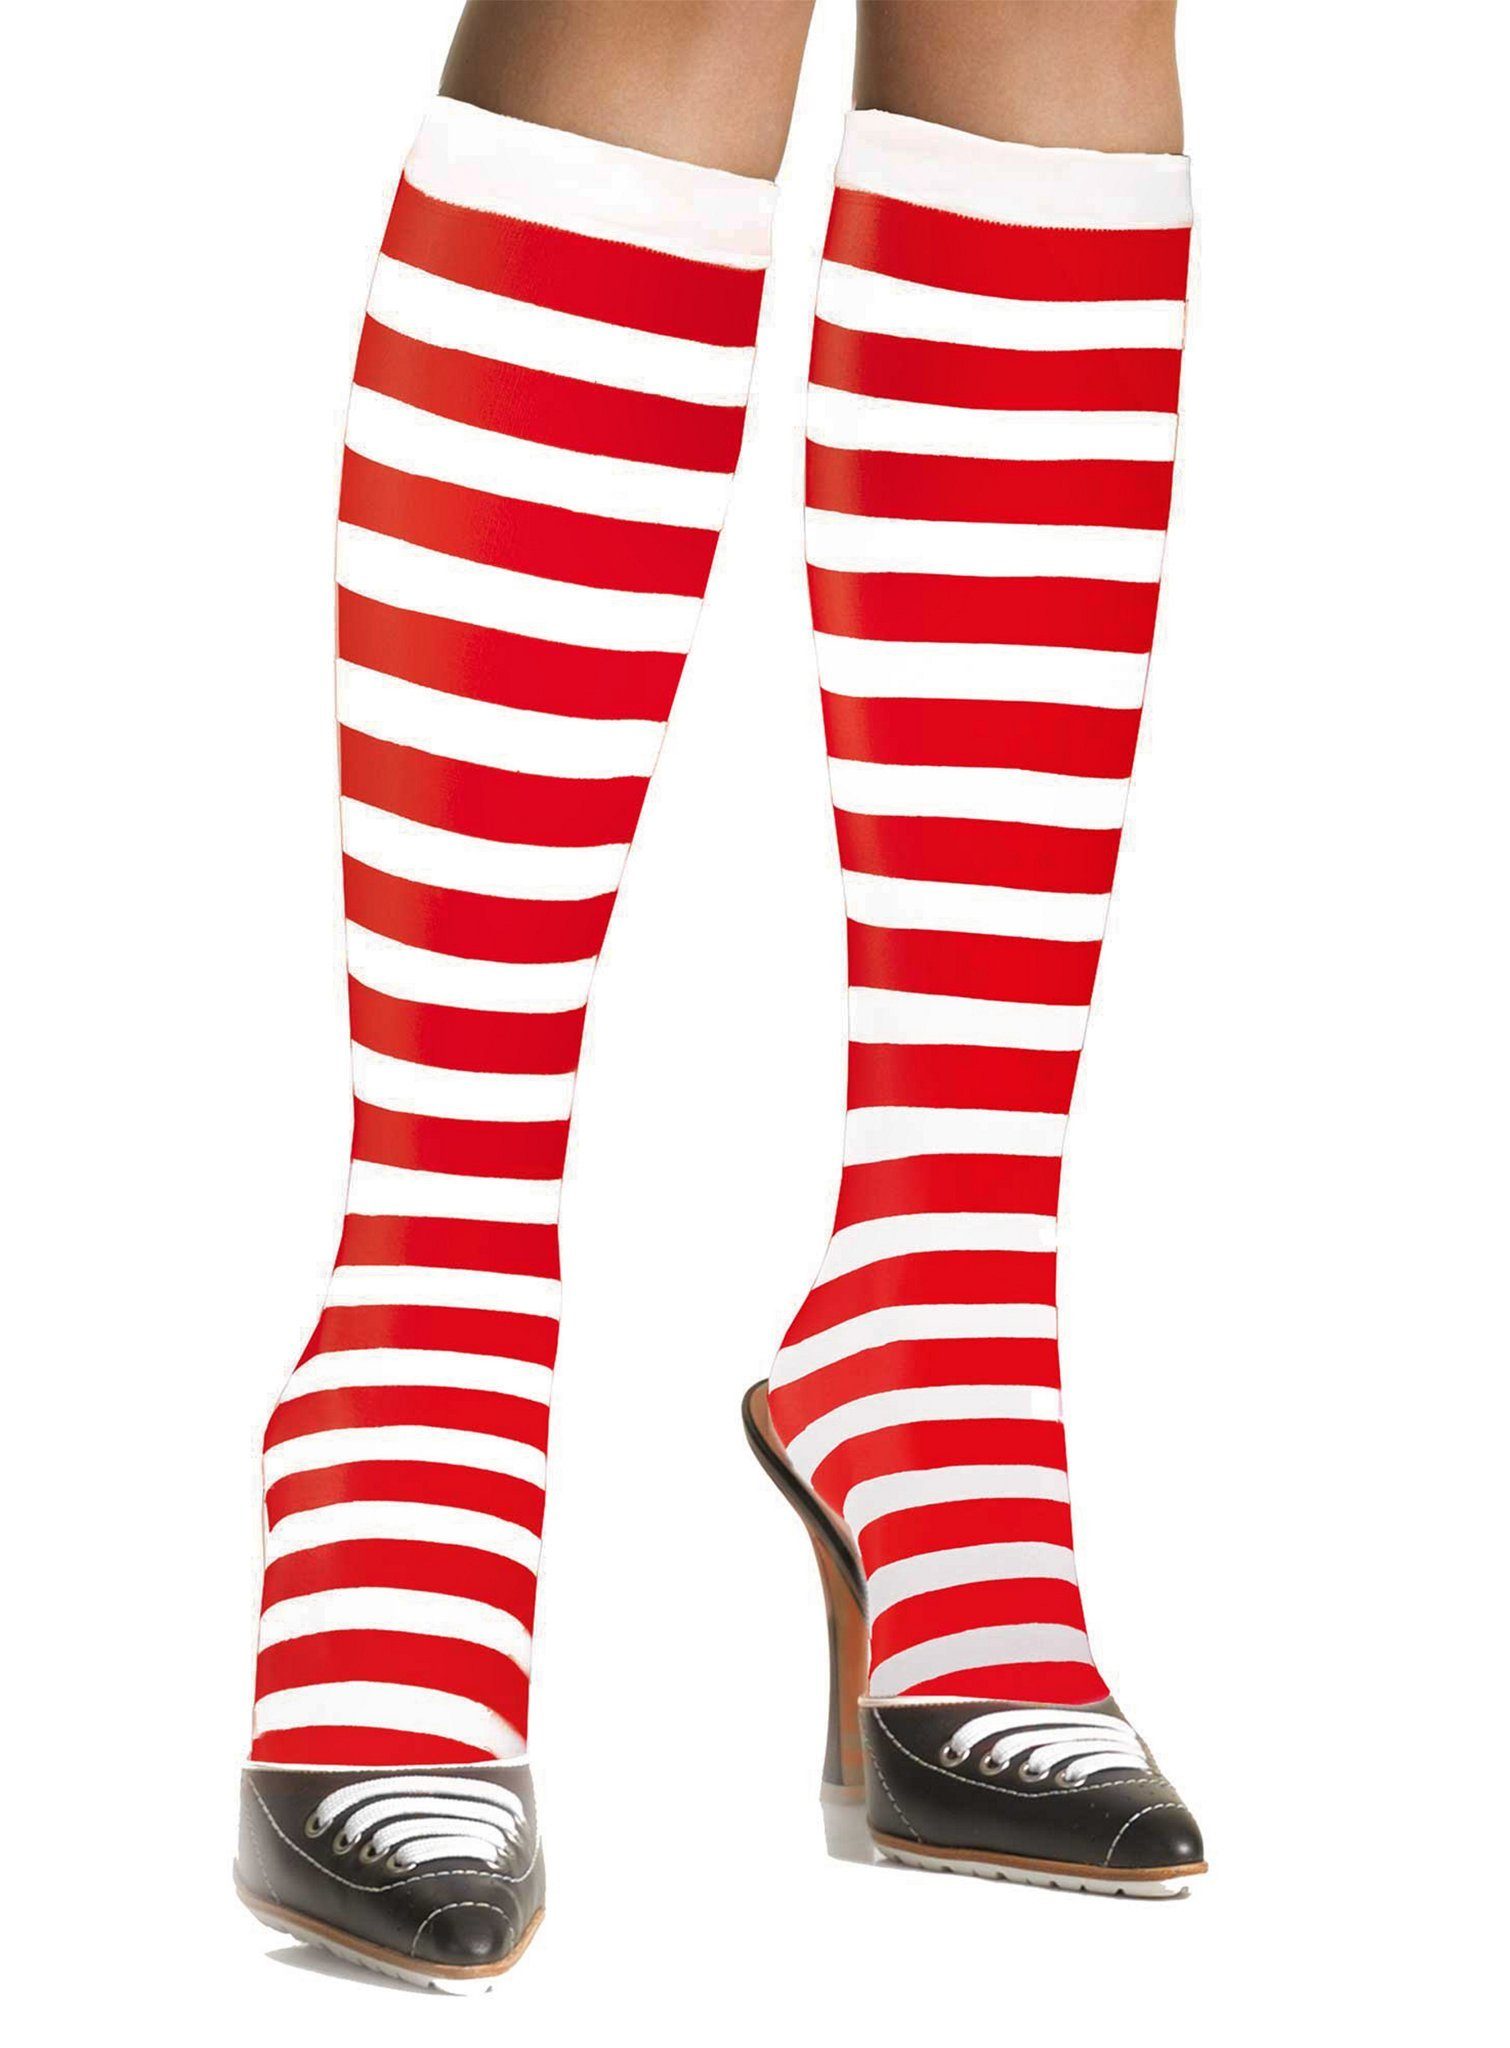 Leg Avenue Kostüm Zuckerstangen Strümpfe, Ringel Kniestrümpfe in Weiß-Rot  als vielseitig kombinierbares Kostümzubehör